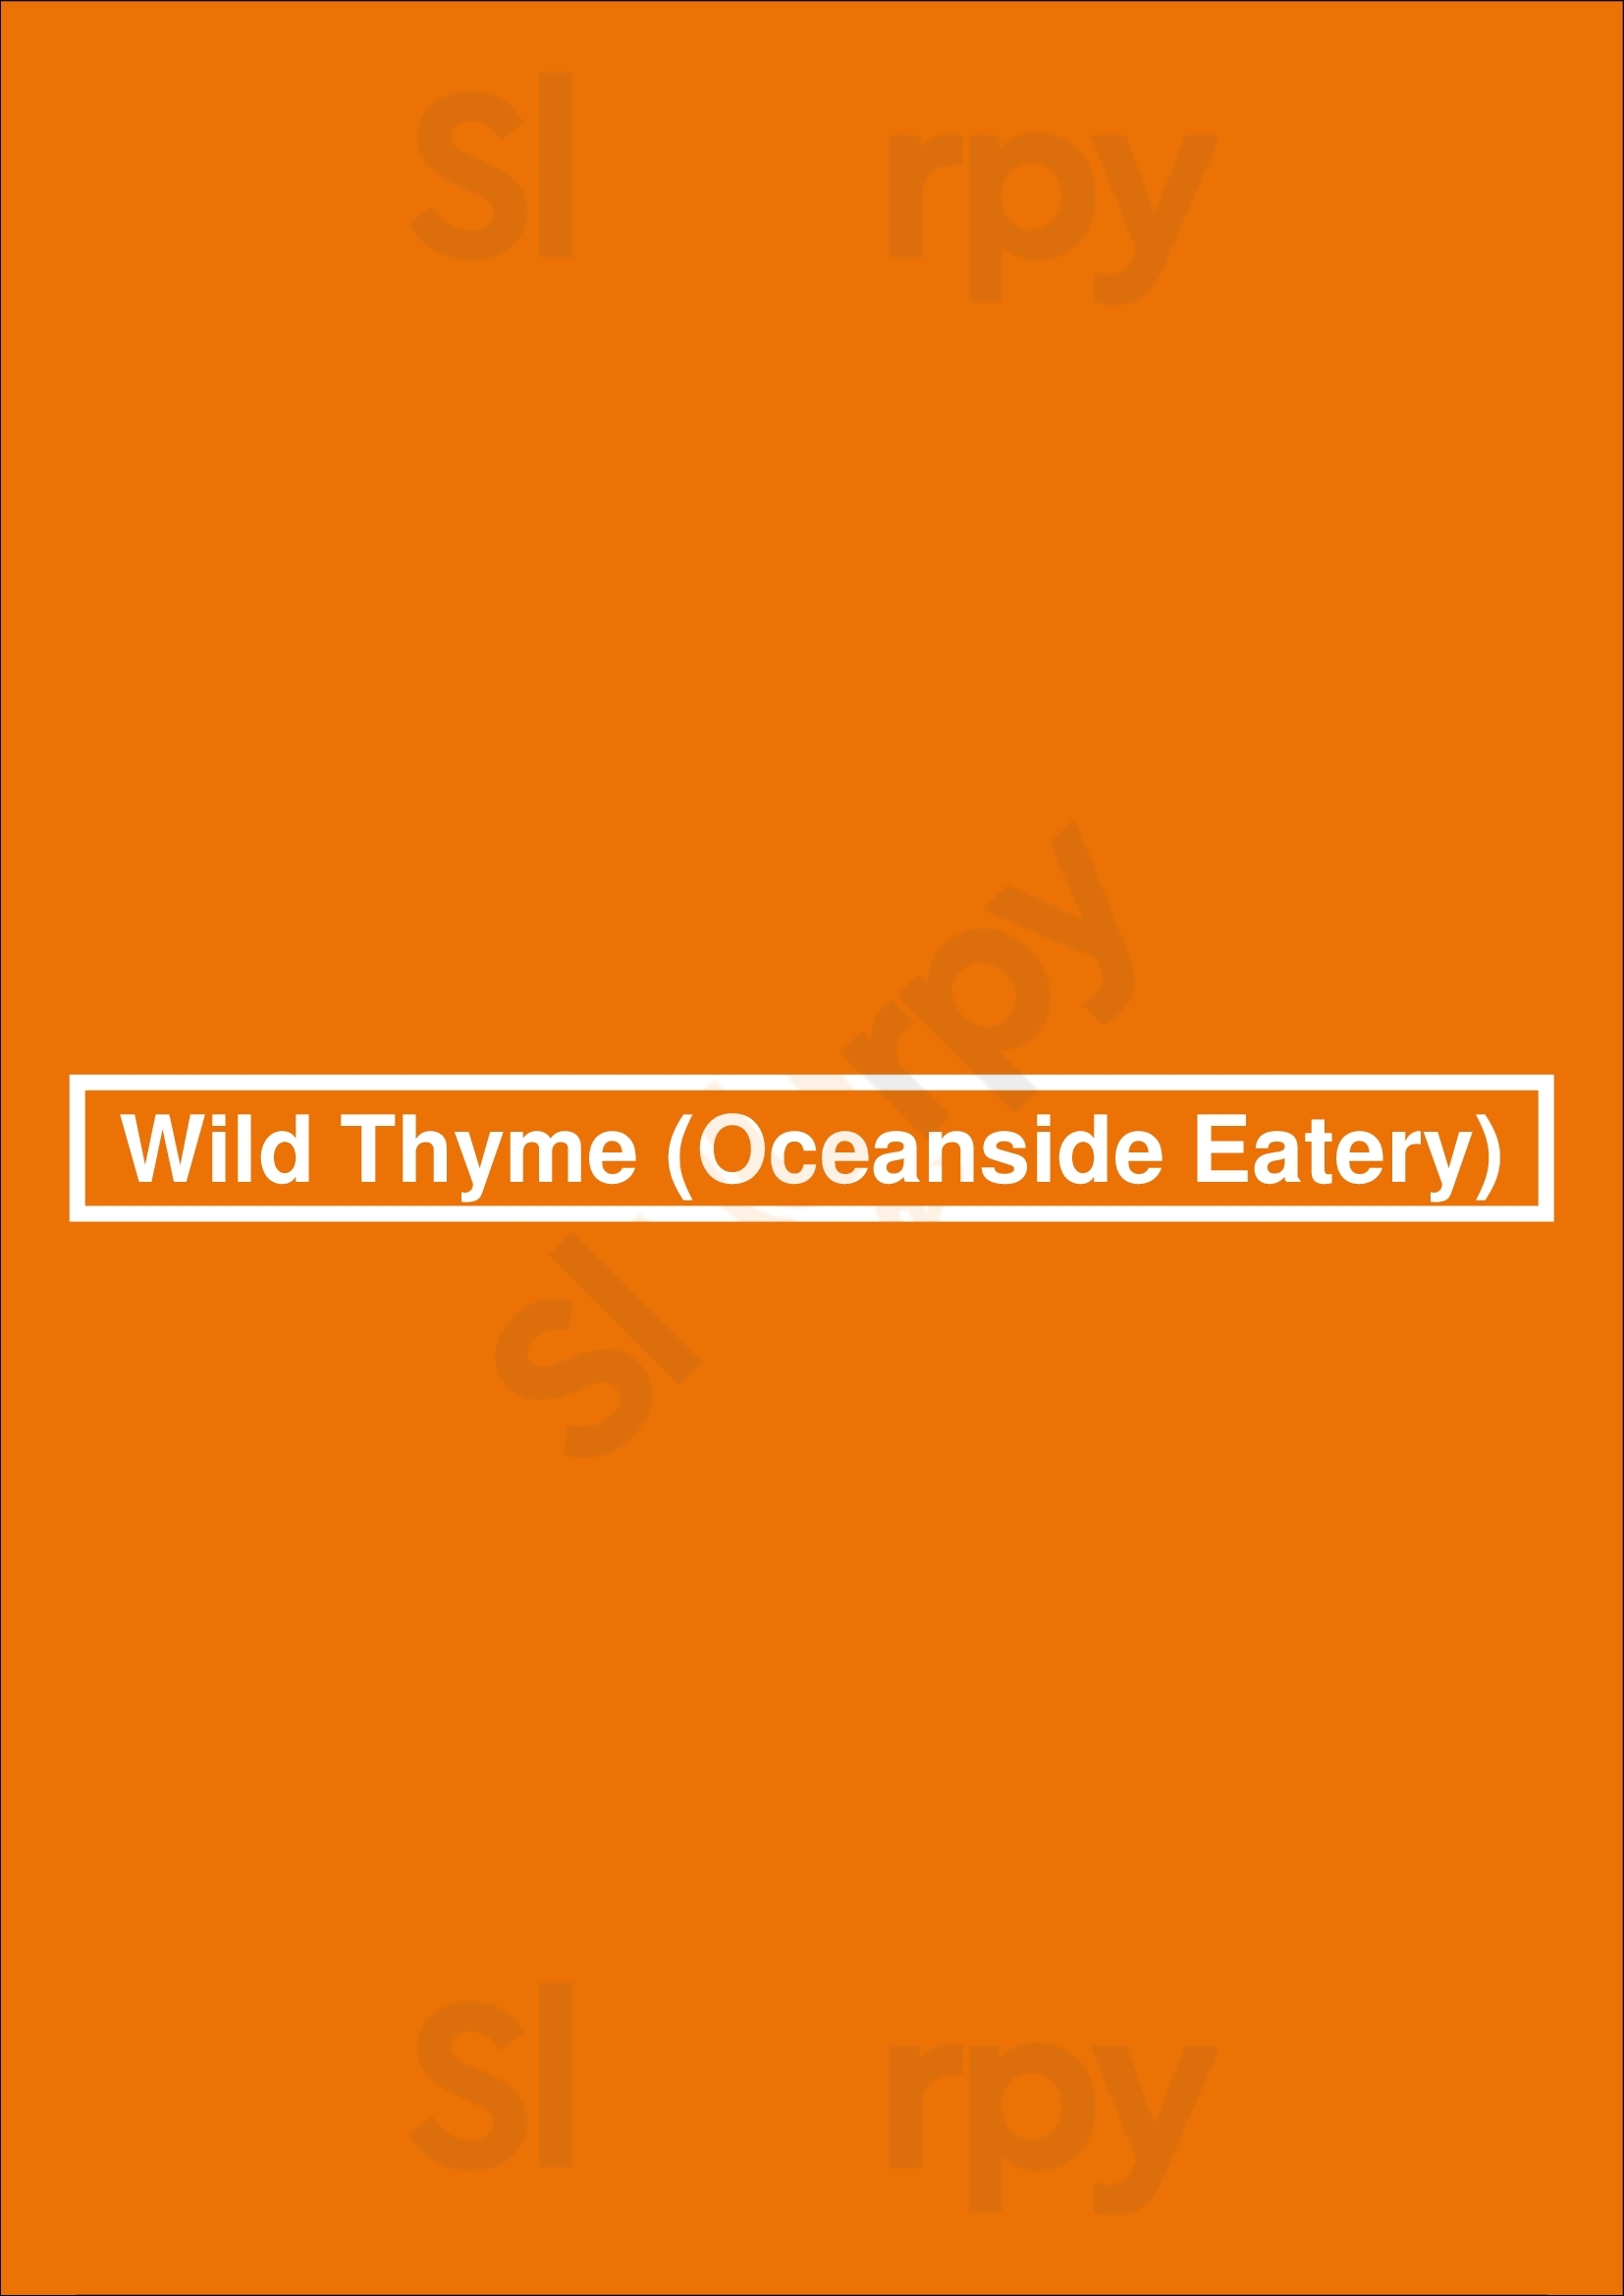 Wild Thyme (oceanside Eatery) Fort Lauderdale Menu - 1